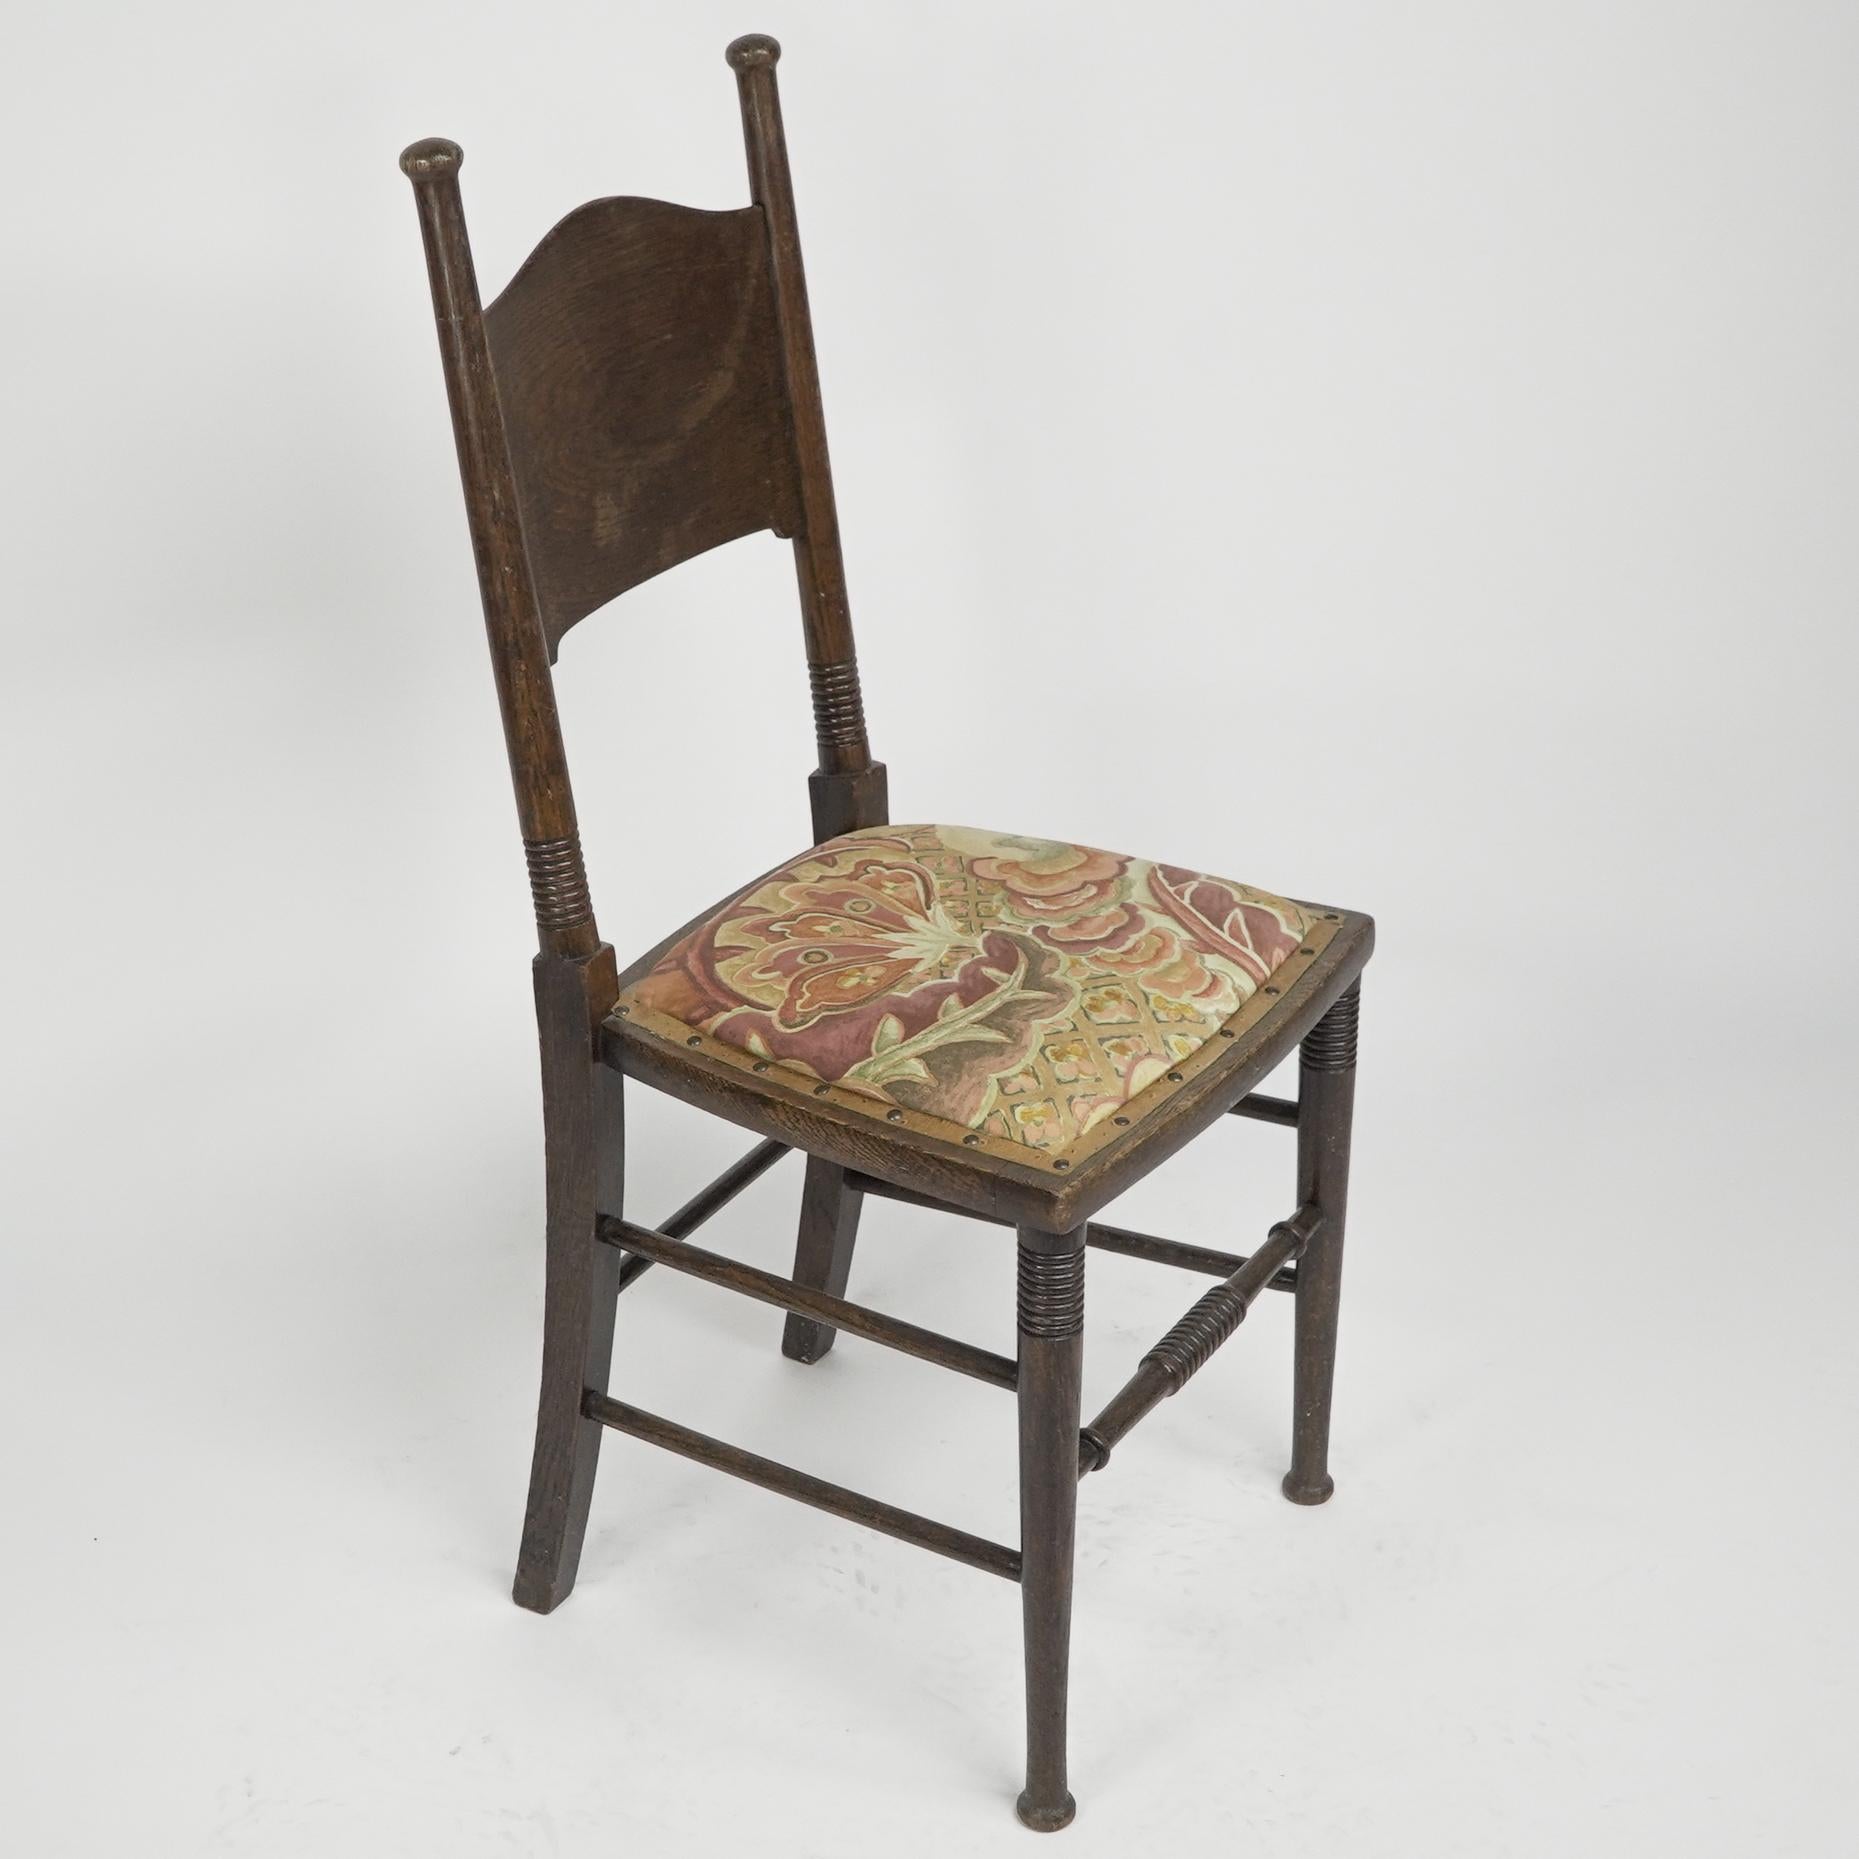 William Birch Ein gepolsterter Stuhl aus Eichenholz im Stil des Arts and Crafts.
